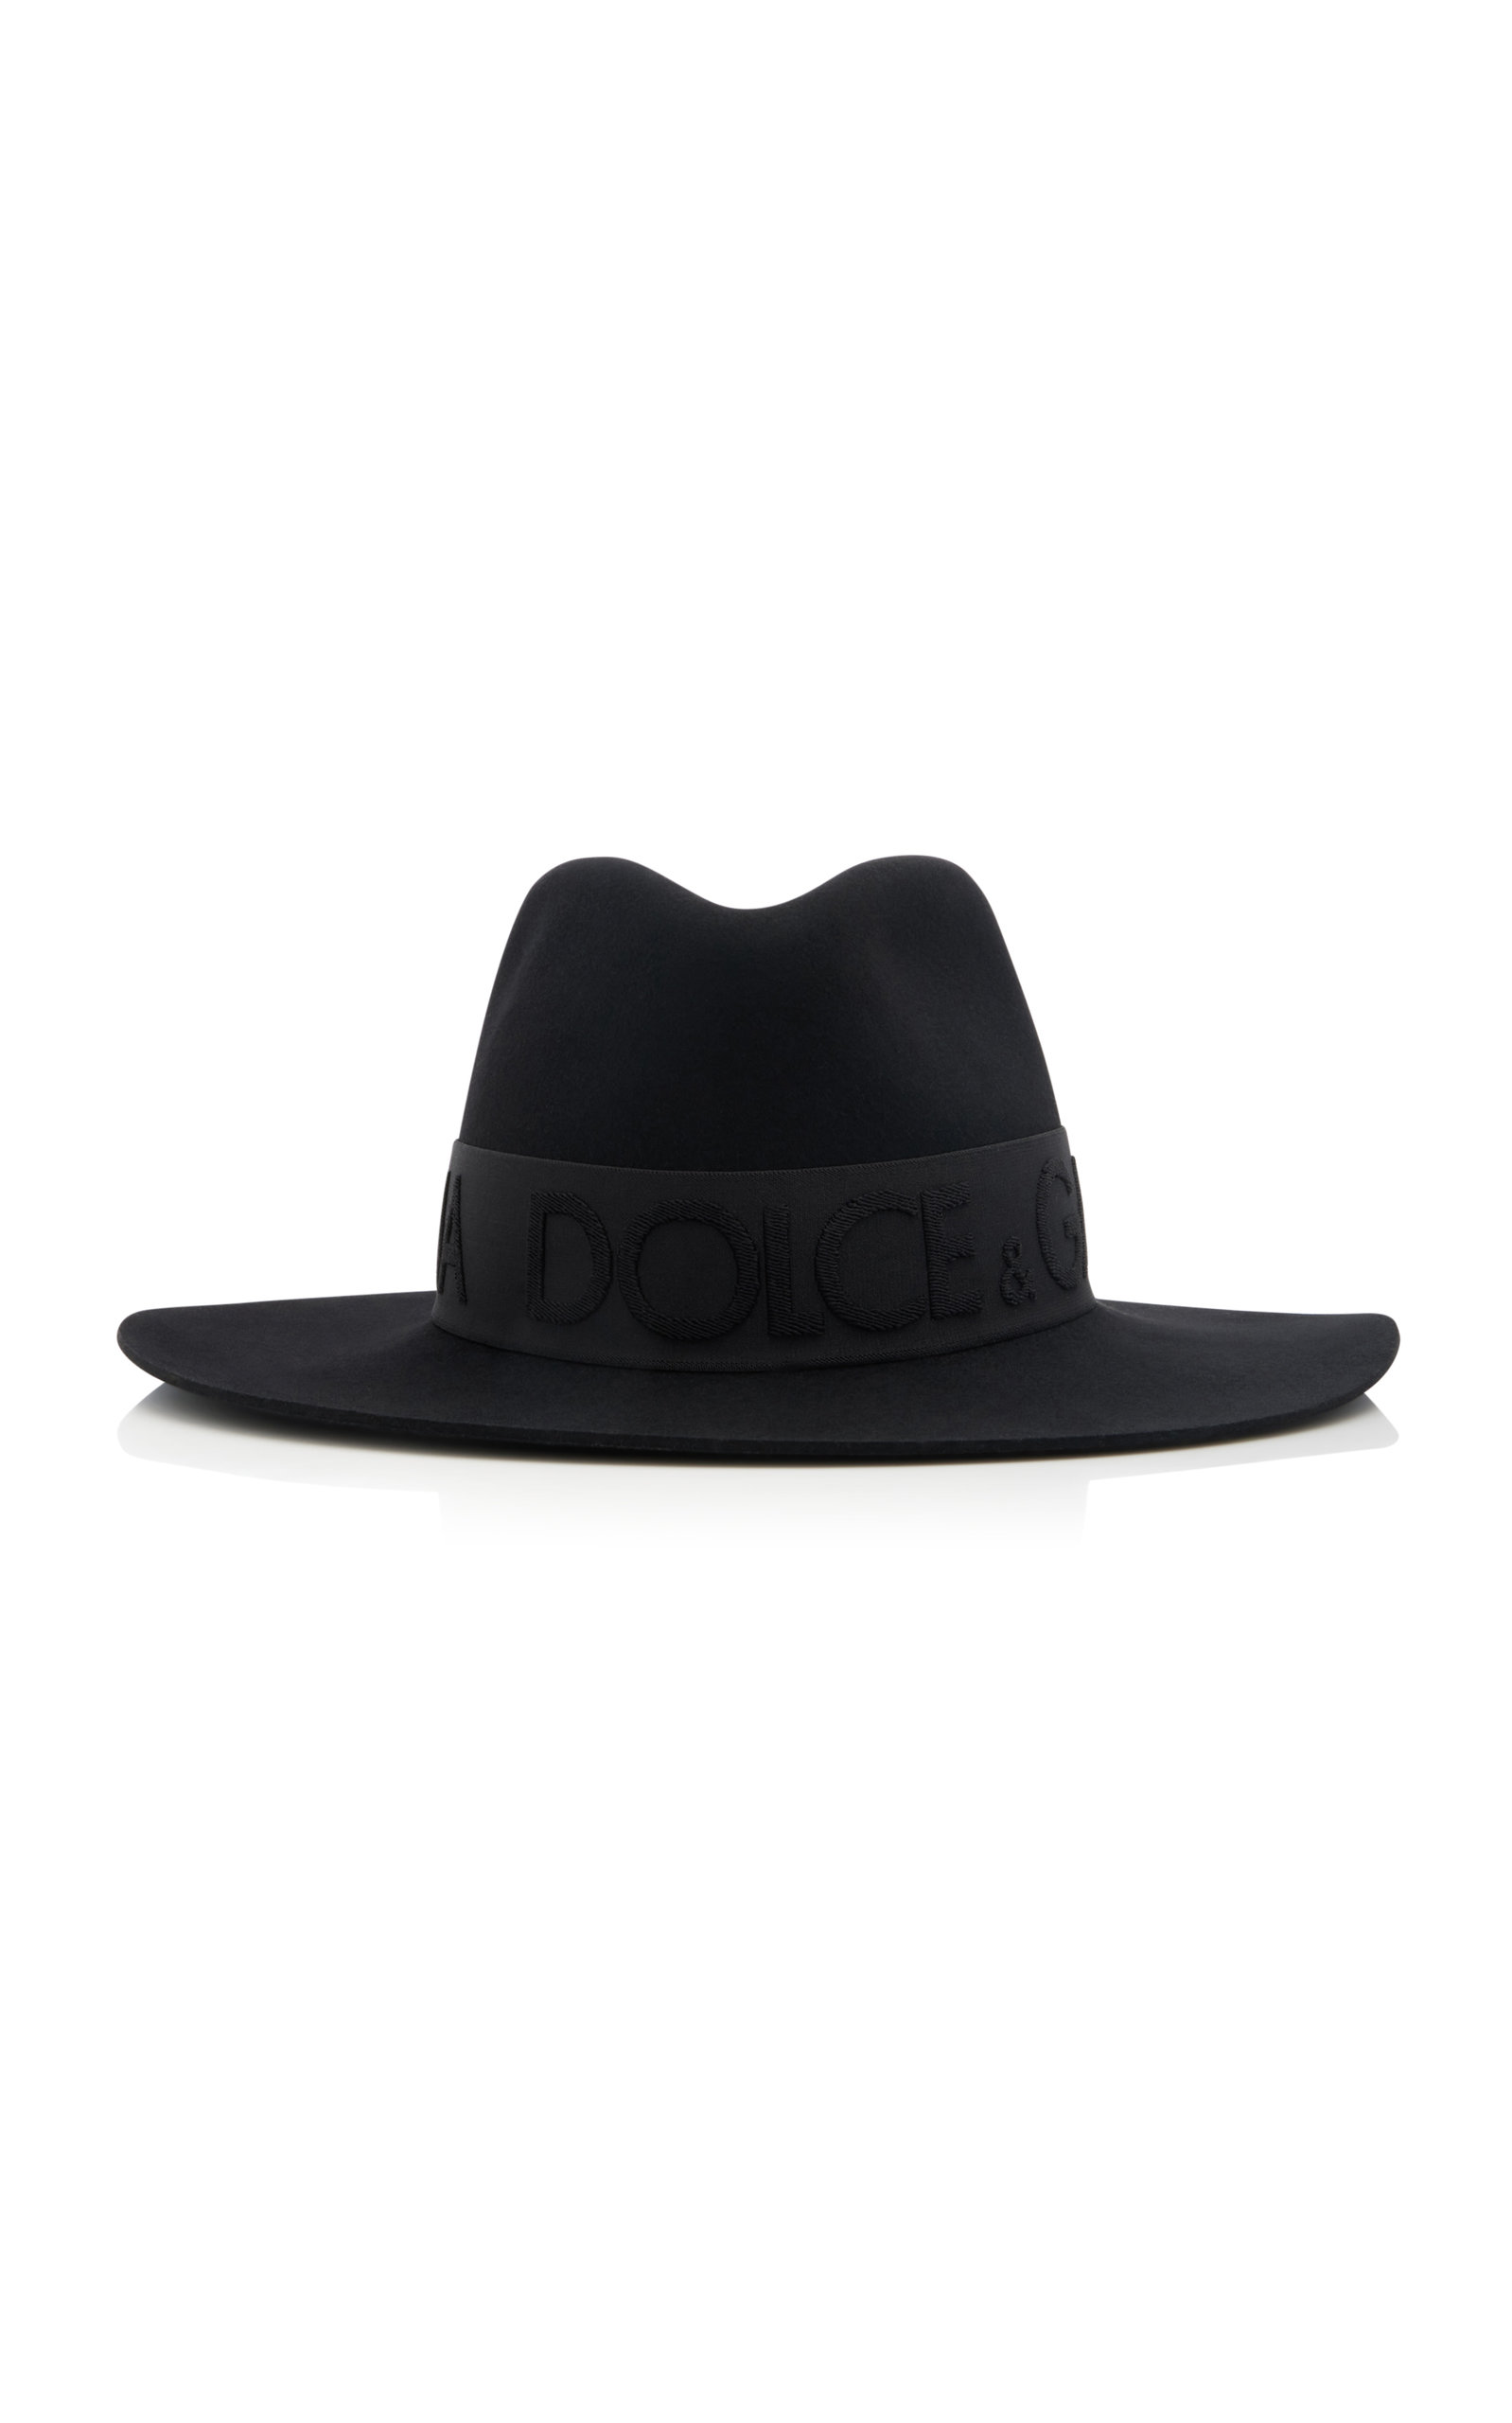 Dolce & Gabbana - Women's Felt Fedora Hat - Black - EU 57 - Moda Operandi